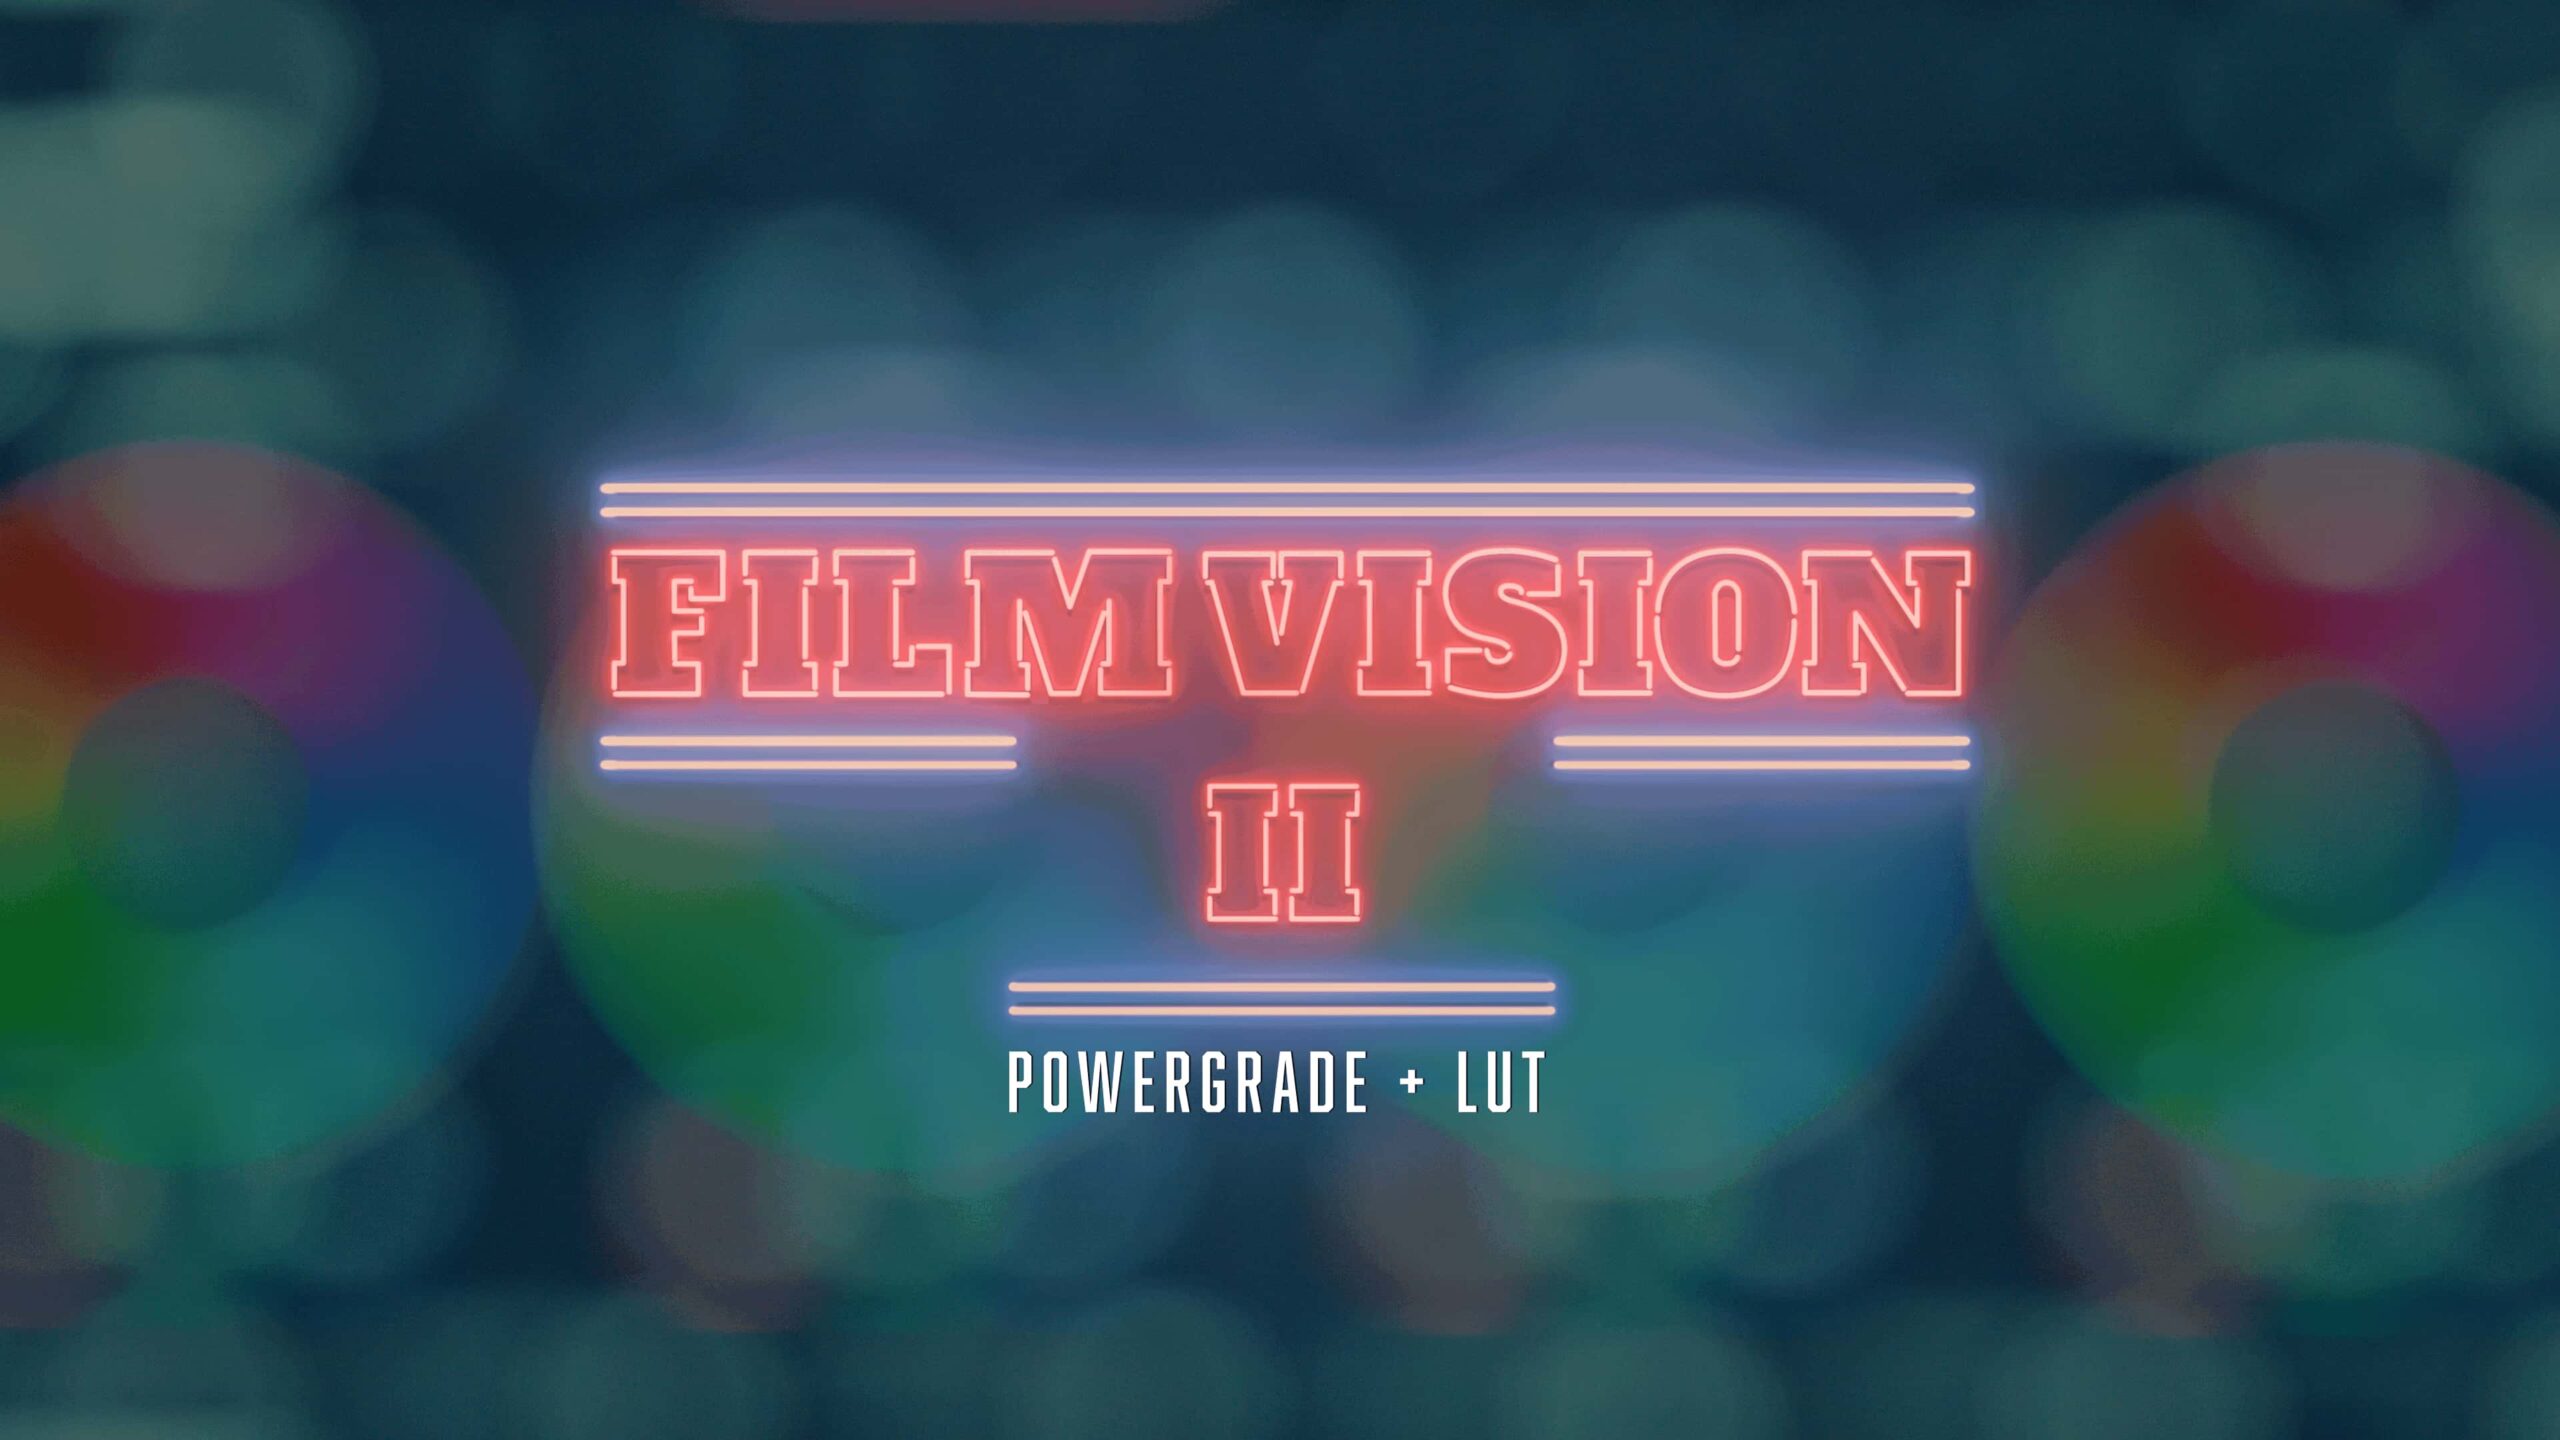 达芬奇模拟柯达500T/250D胶片仿真拍摄效果调色预设 Moment – FilmVision V2 Powergrade (Davinci Resolve)-后期素材库